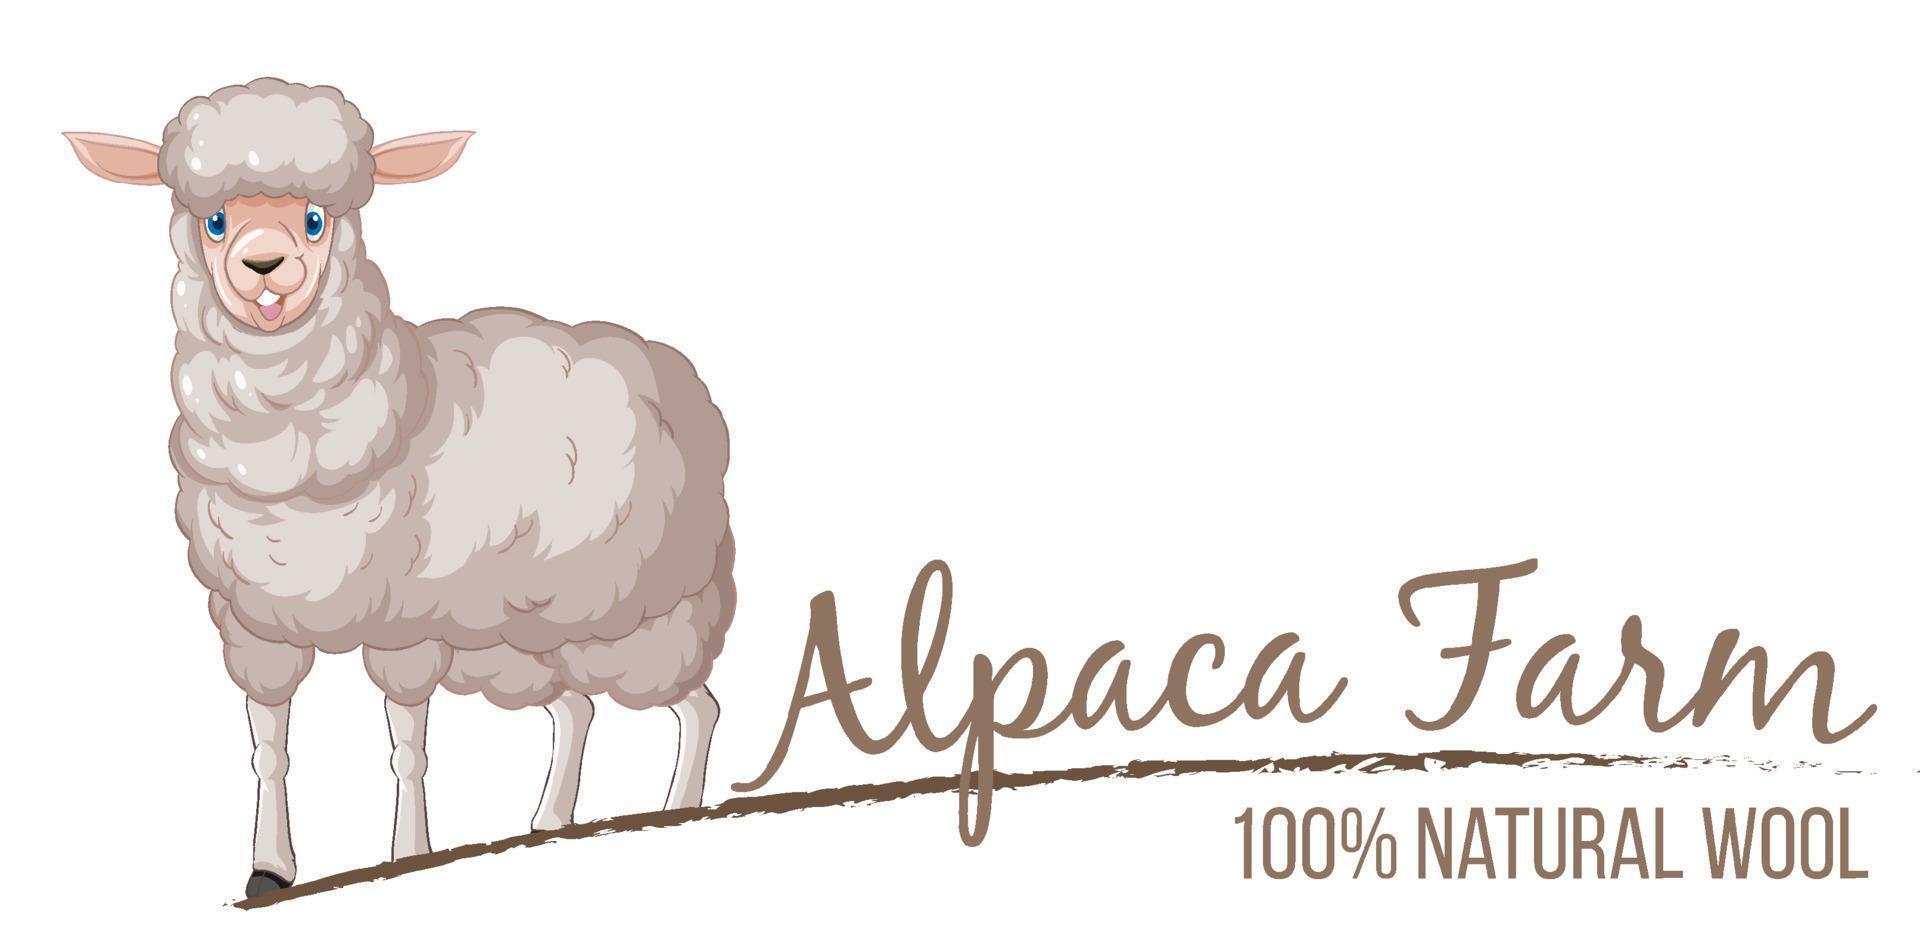 alpackagårdslogotyp för ullprodukter vektor